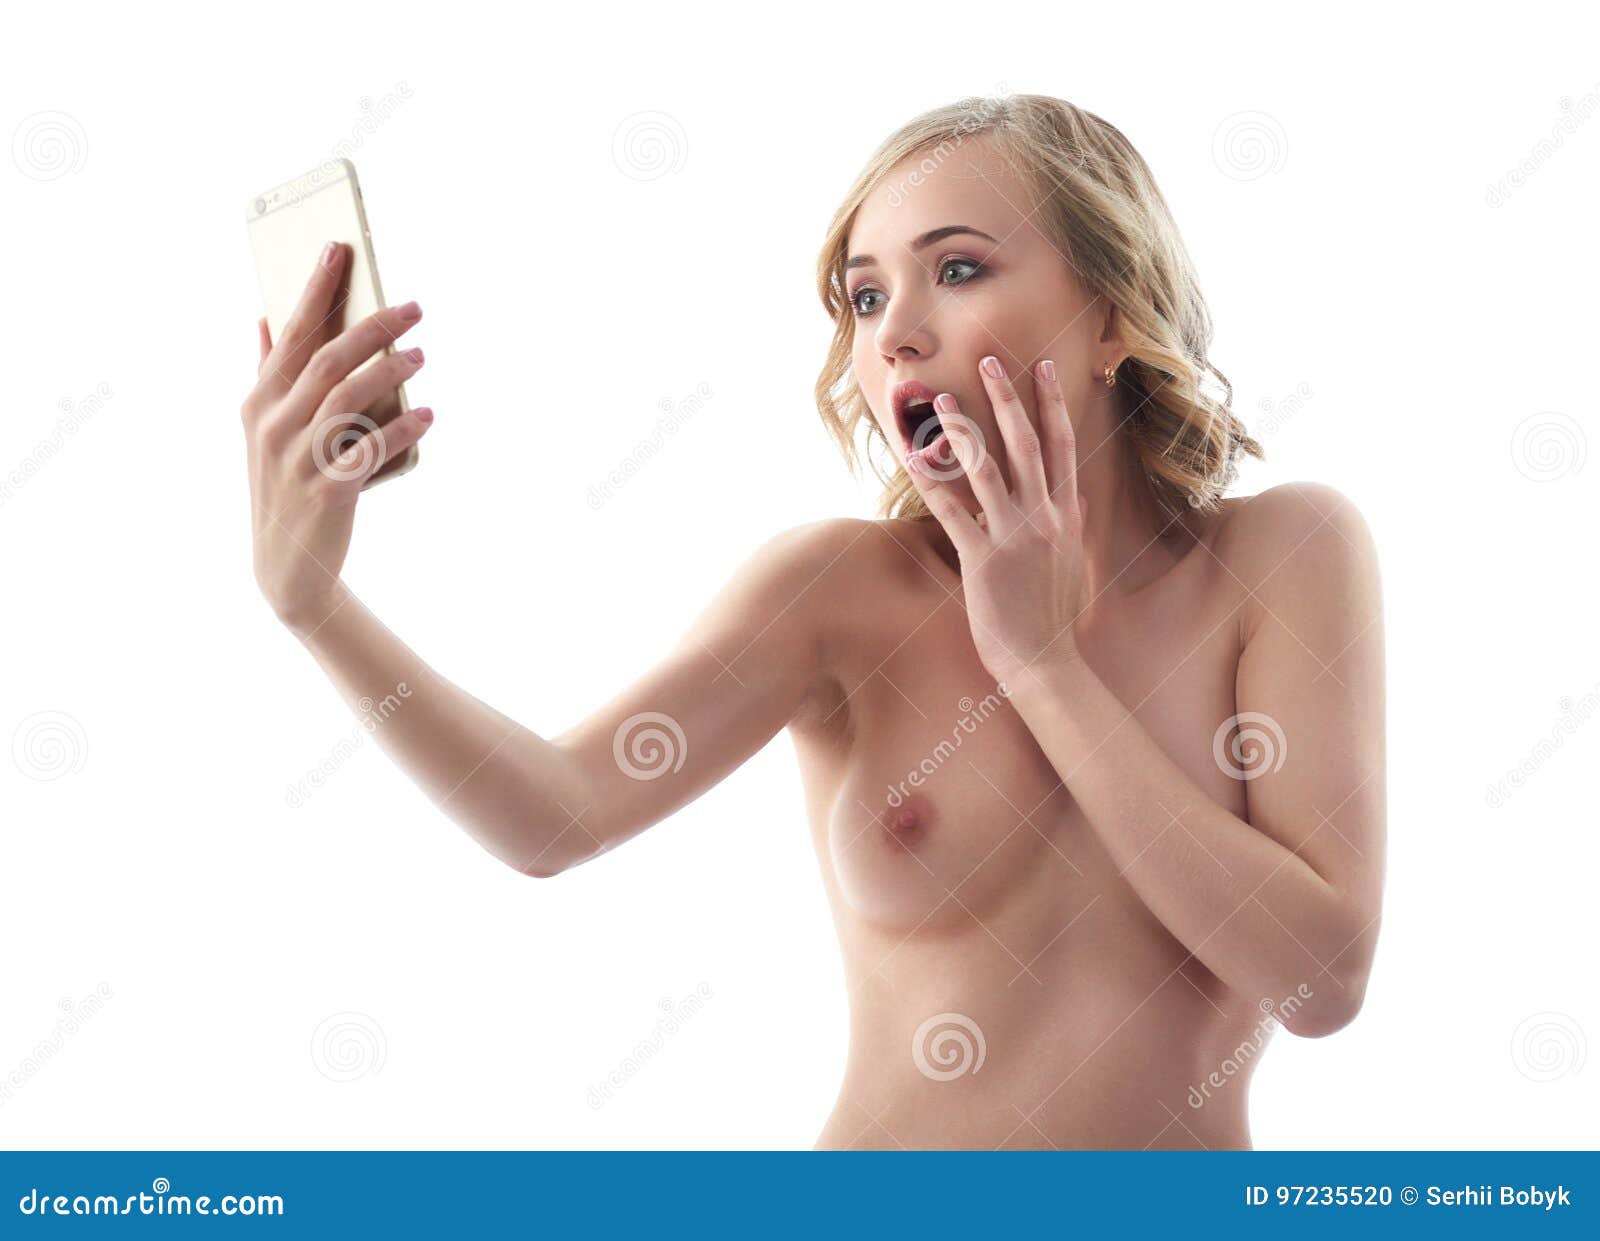 Nude Selfie Woman